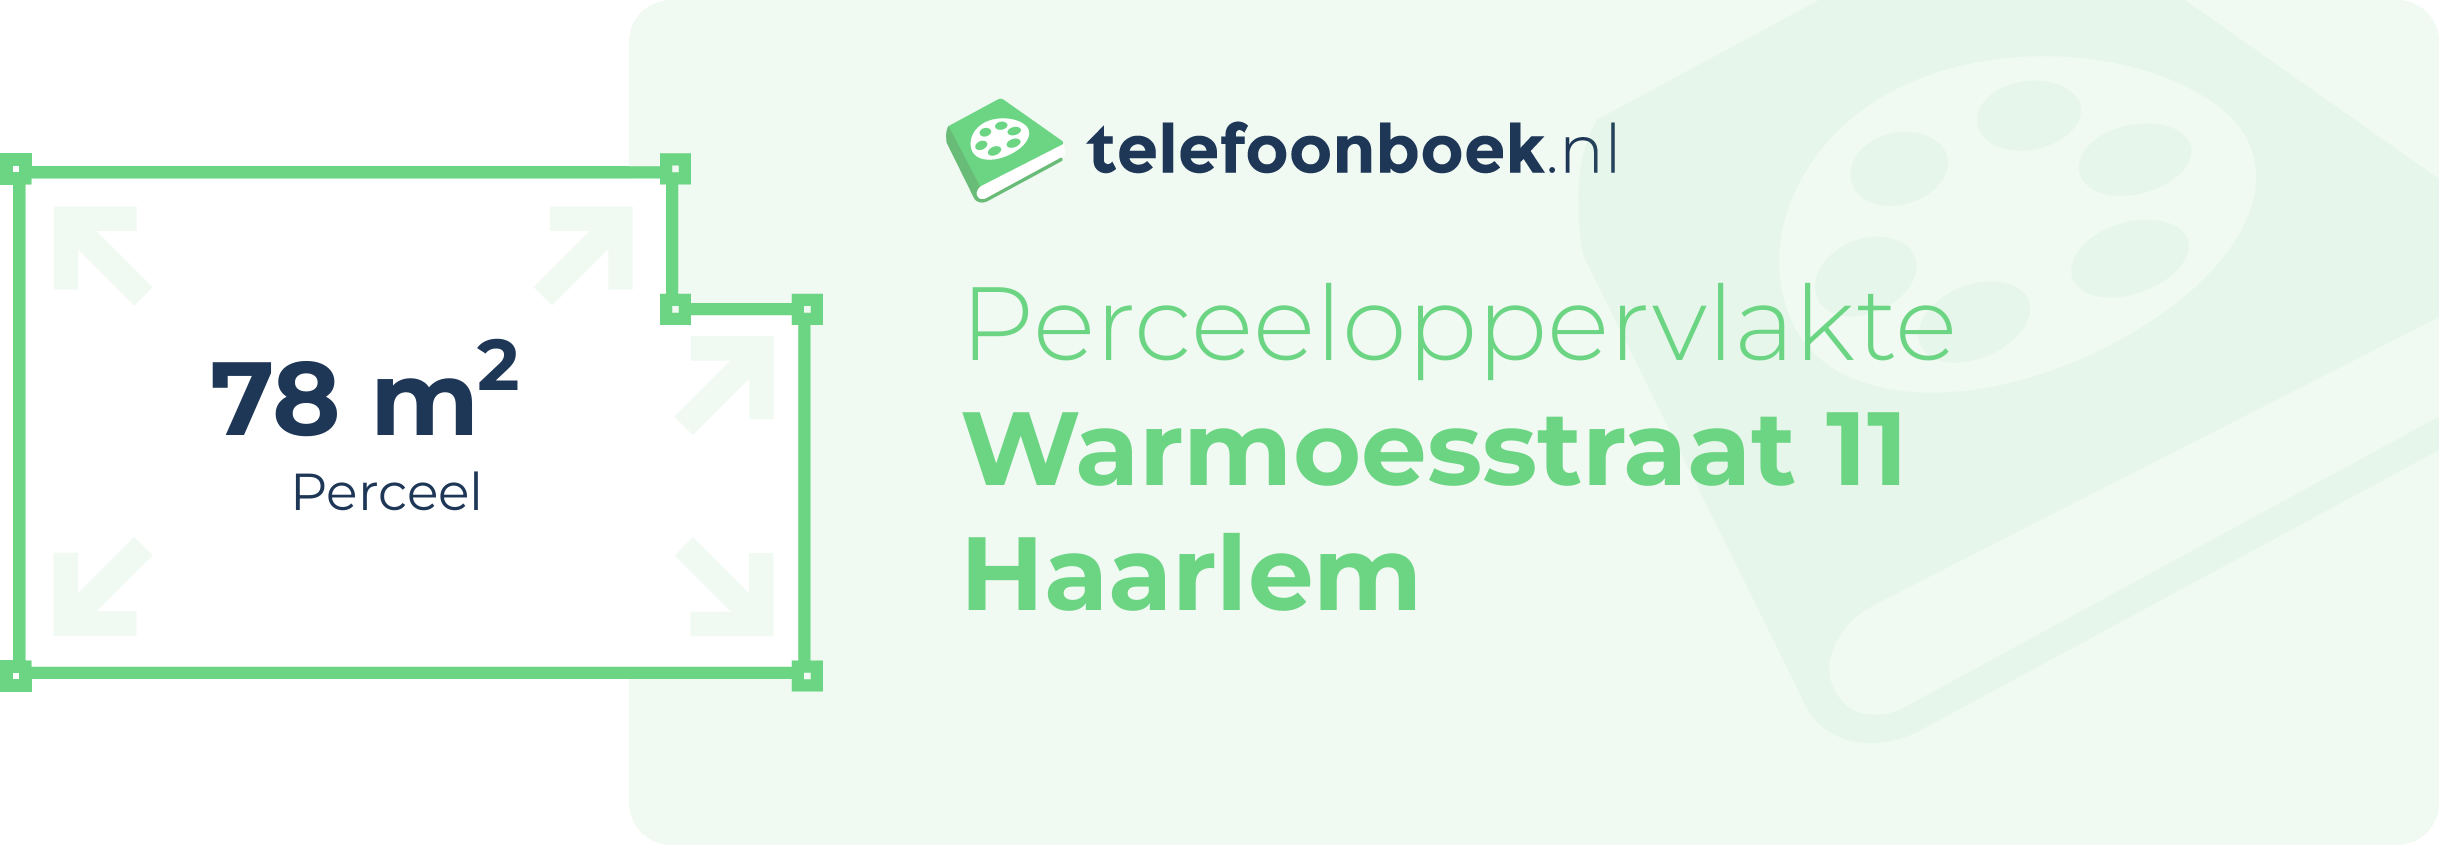 Perceeloppervlakte Warmoesstraat 11 Haarlem